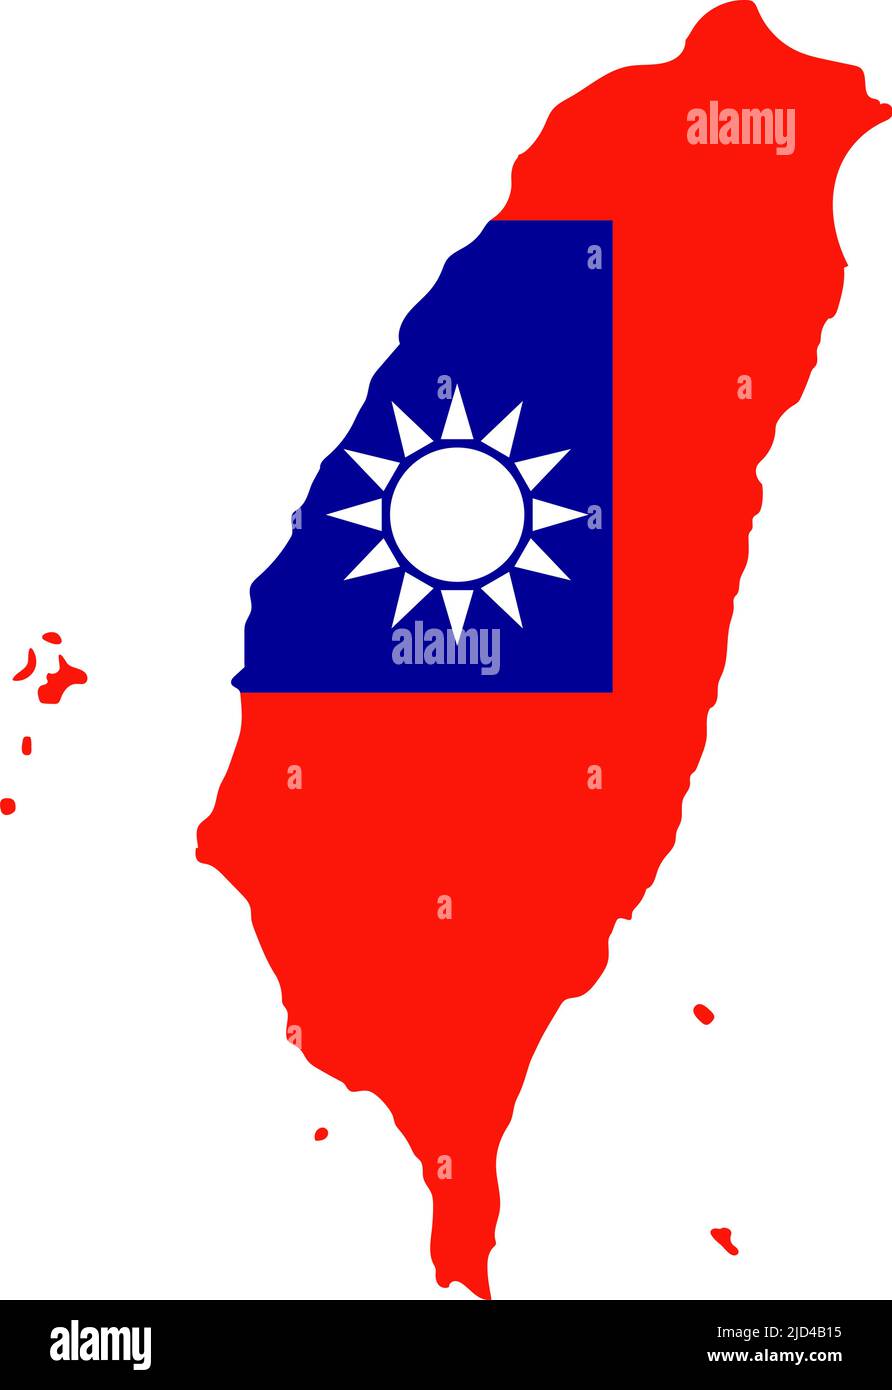 Taiwanesische Flagge in Form einer Karte von Taiwan. Bearbeitbarer Vektor. Stock Vektor